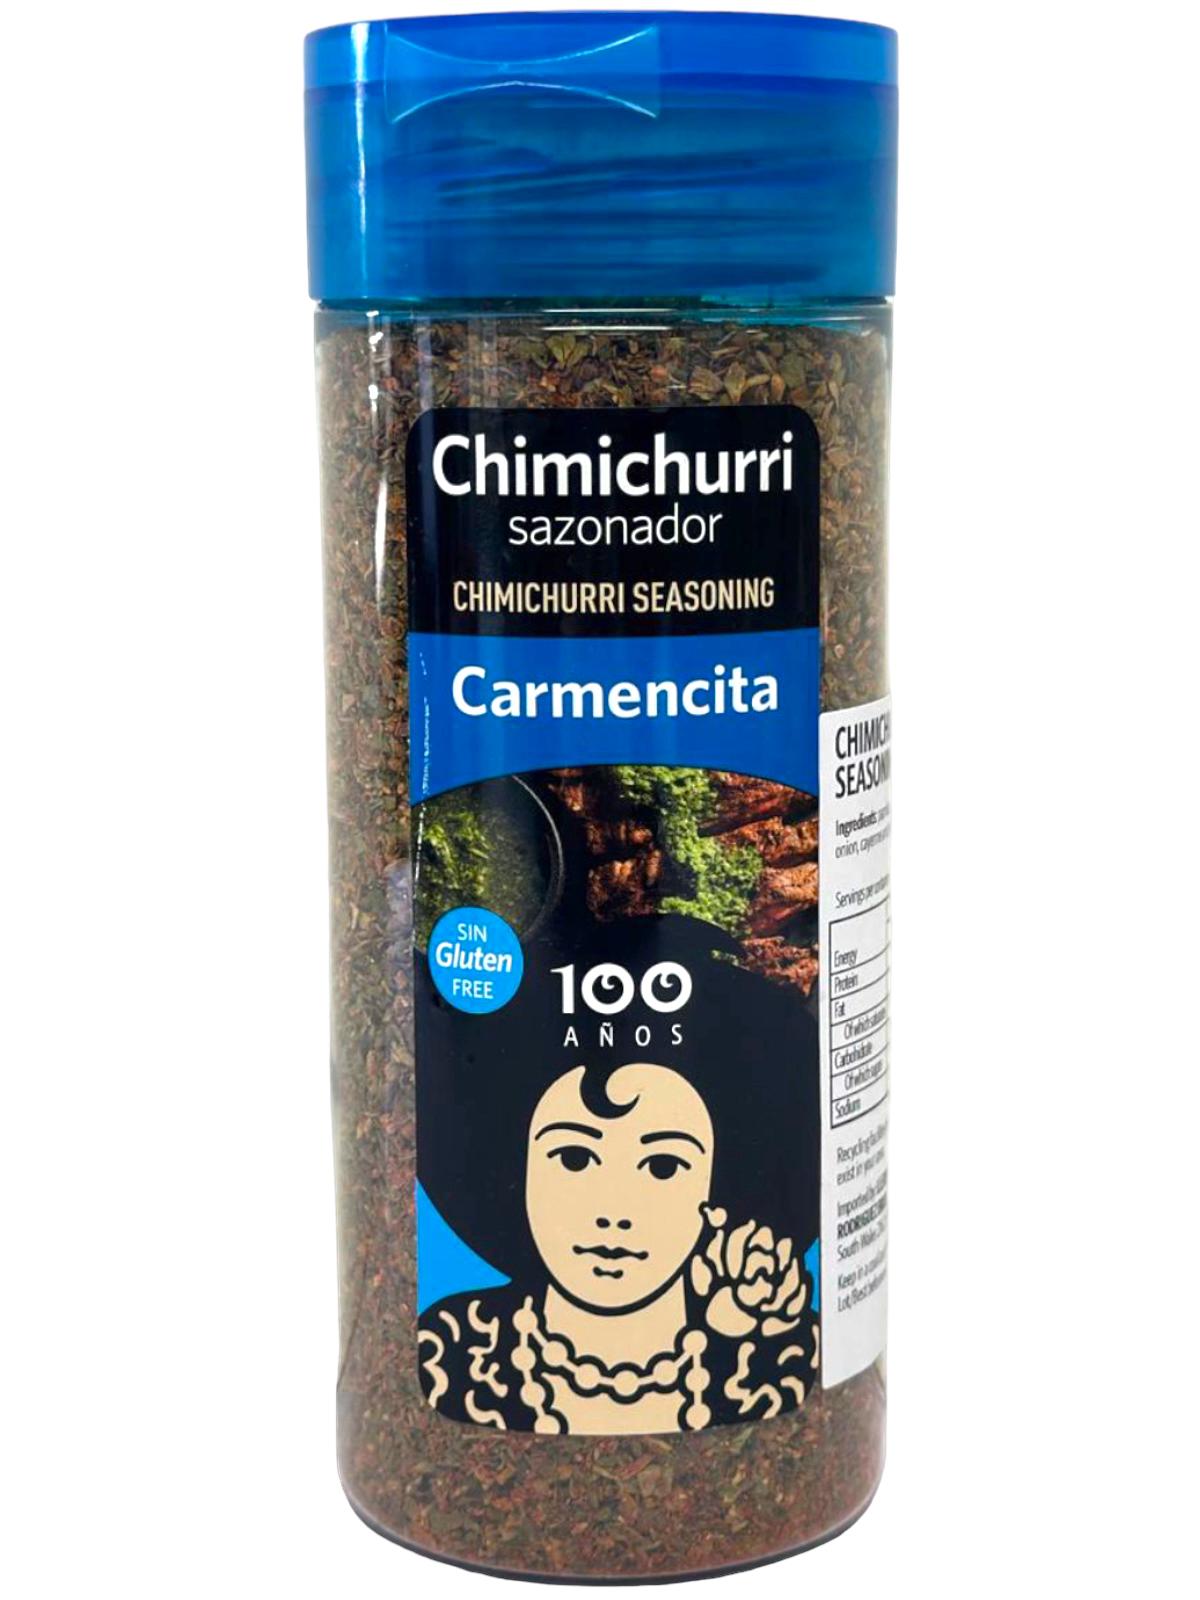 Carmencita Chimichurri Seasoning 110g - Twin Pack 220g total